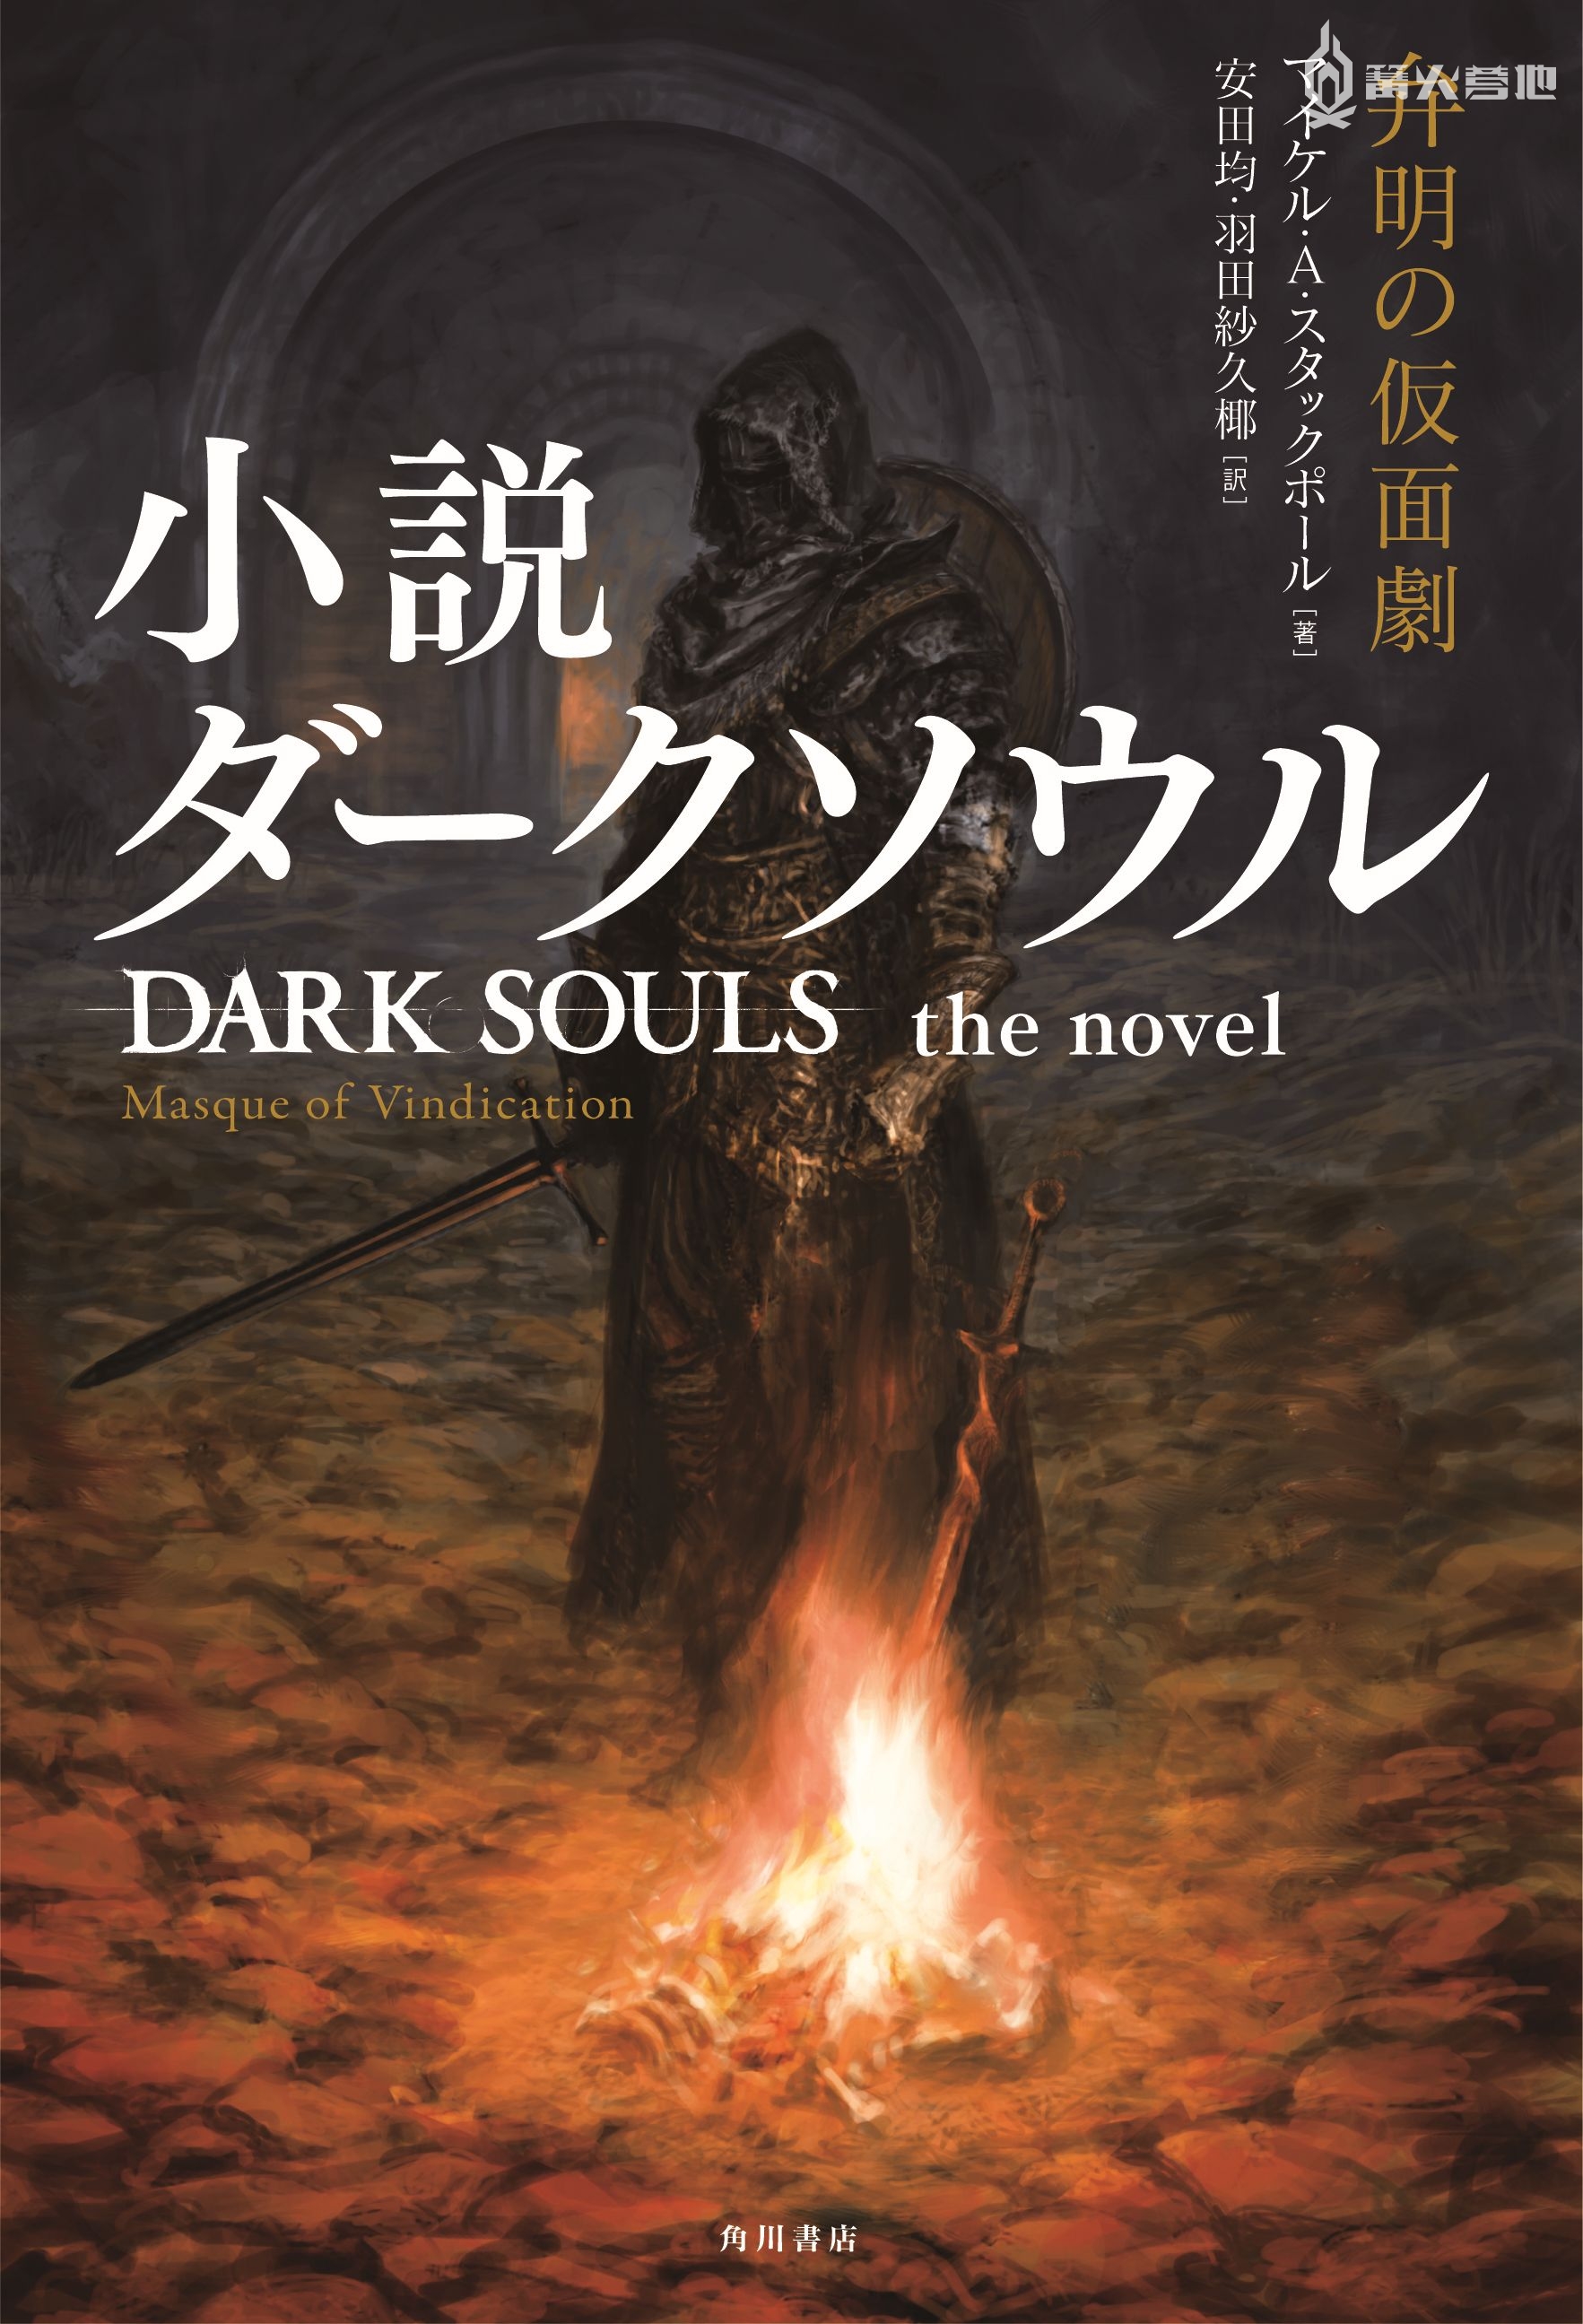 角川将推出《黑暗之魂》系列游戏改编的原创小说